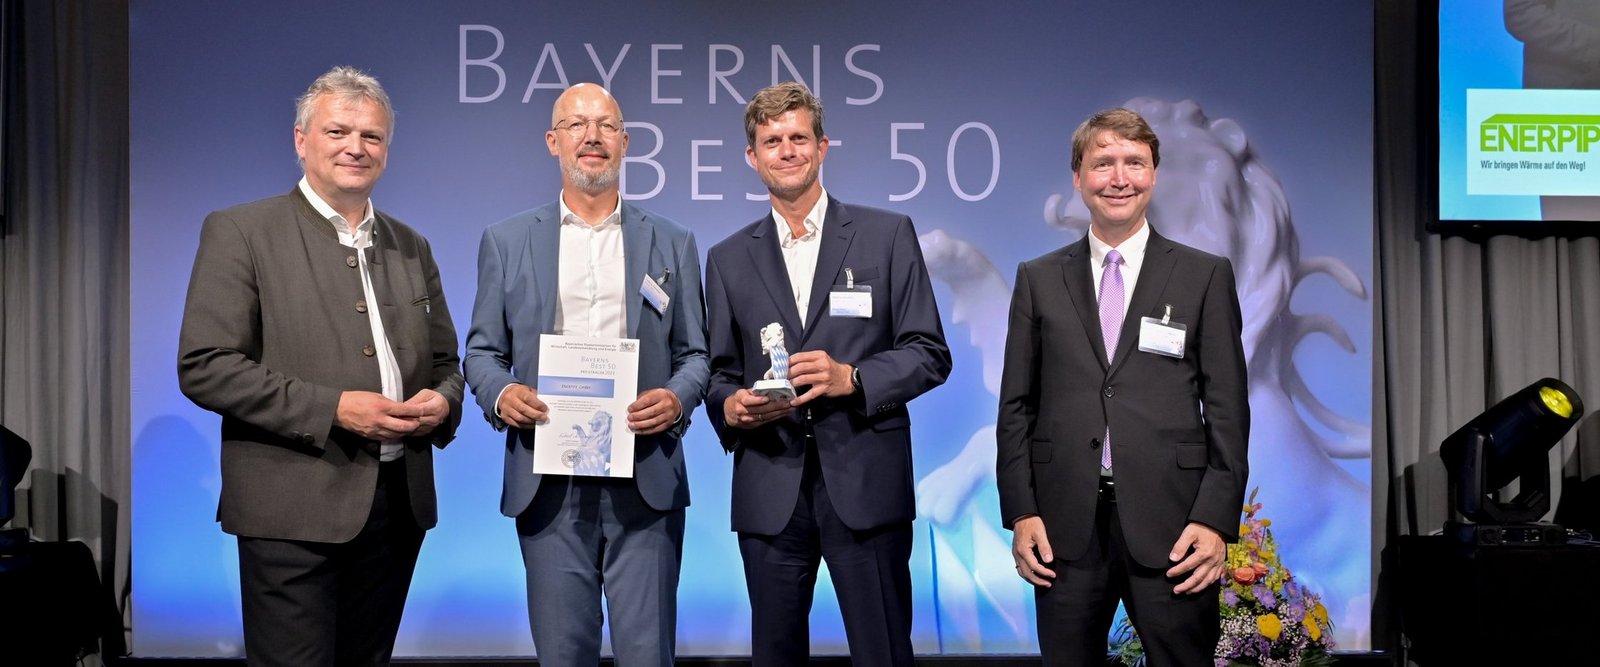 ENerpipe gewinnt AUszeichnung als Bayerns Best 50: Martin Böckler und LUdwig Heinloth